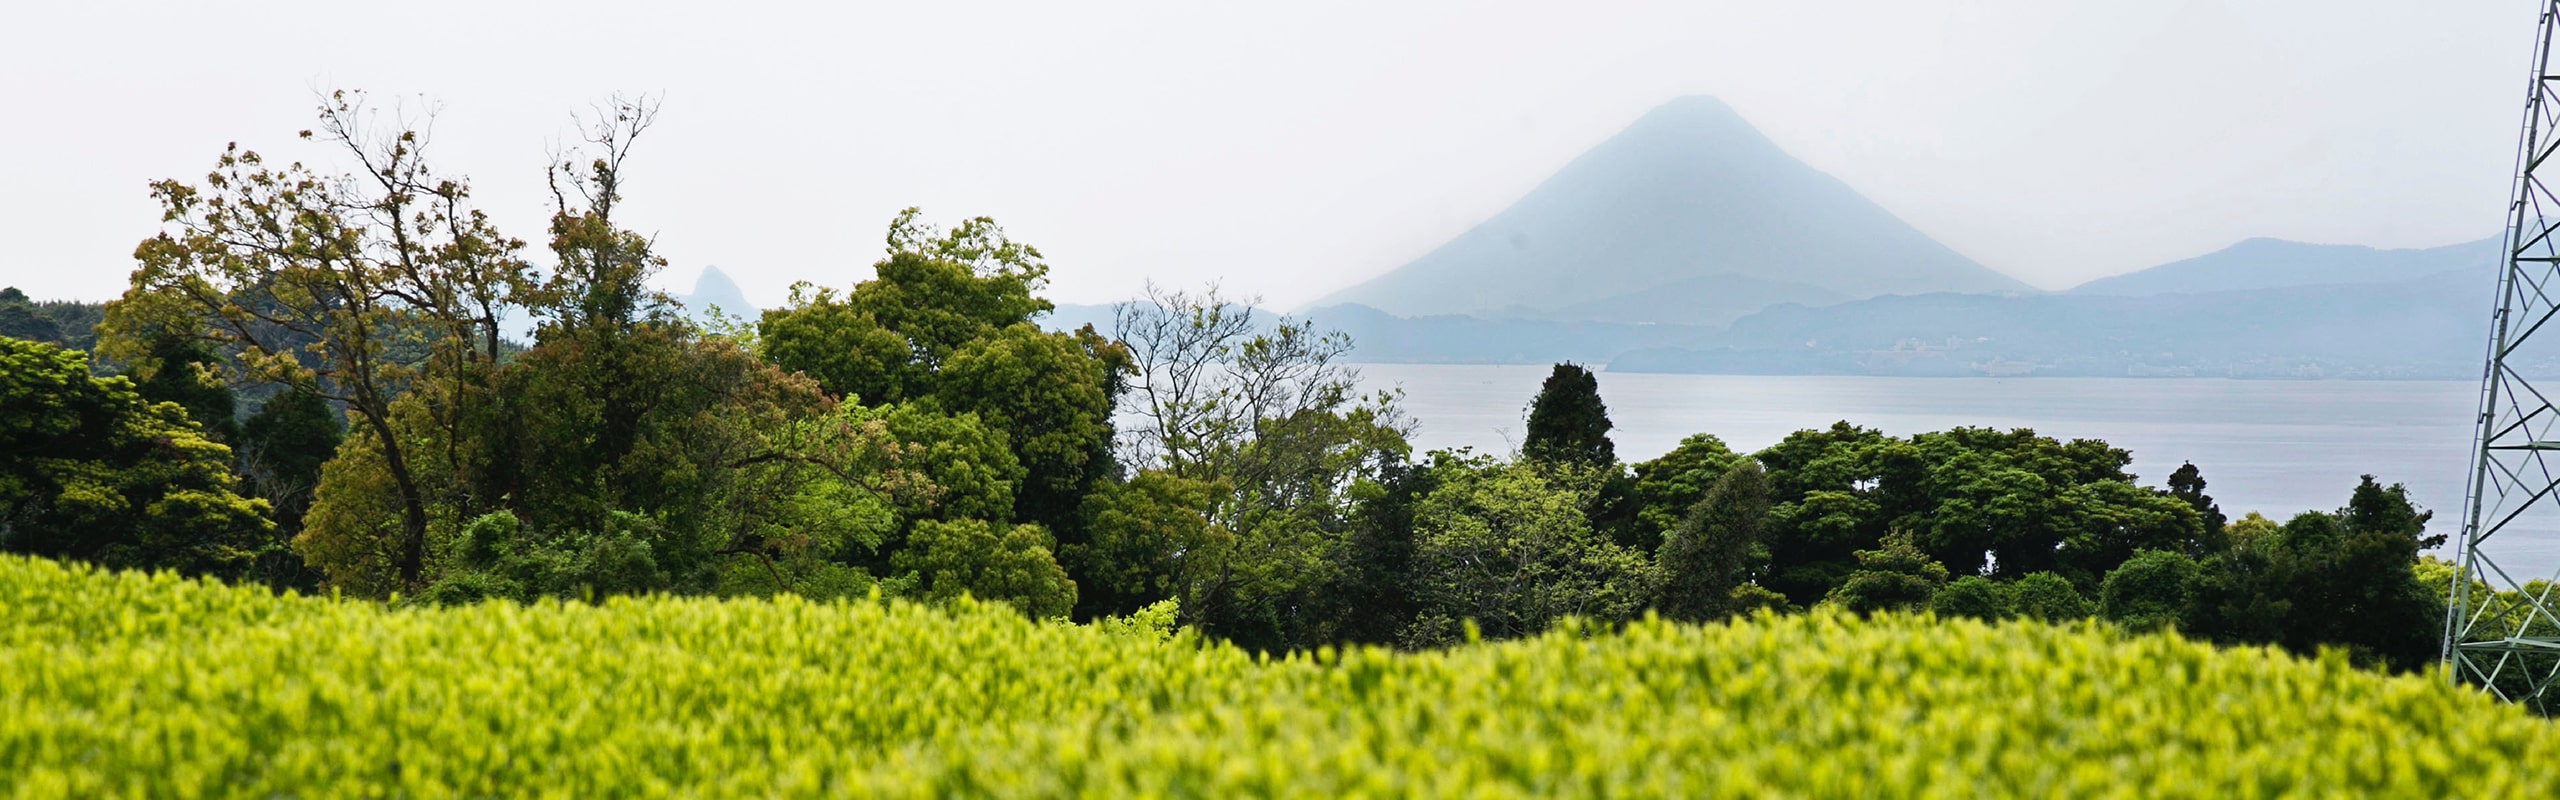 大根占の風景 茶畑越しに錦江湾と対岸の開聞岳